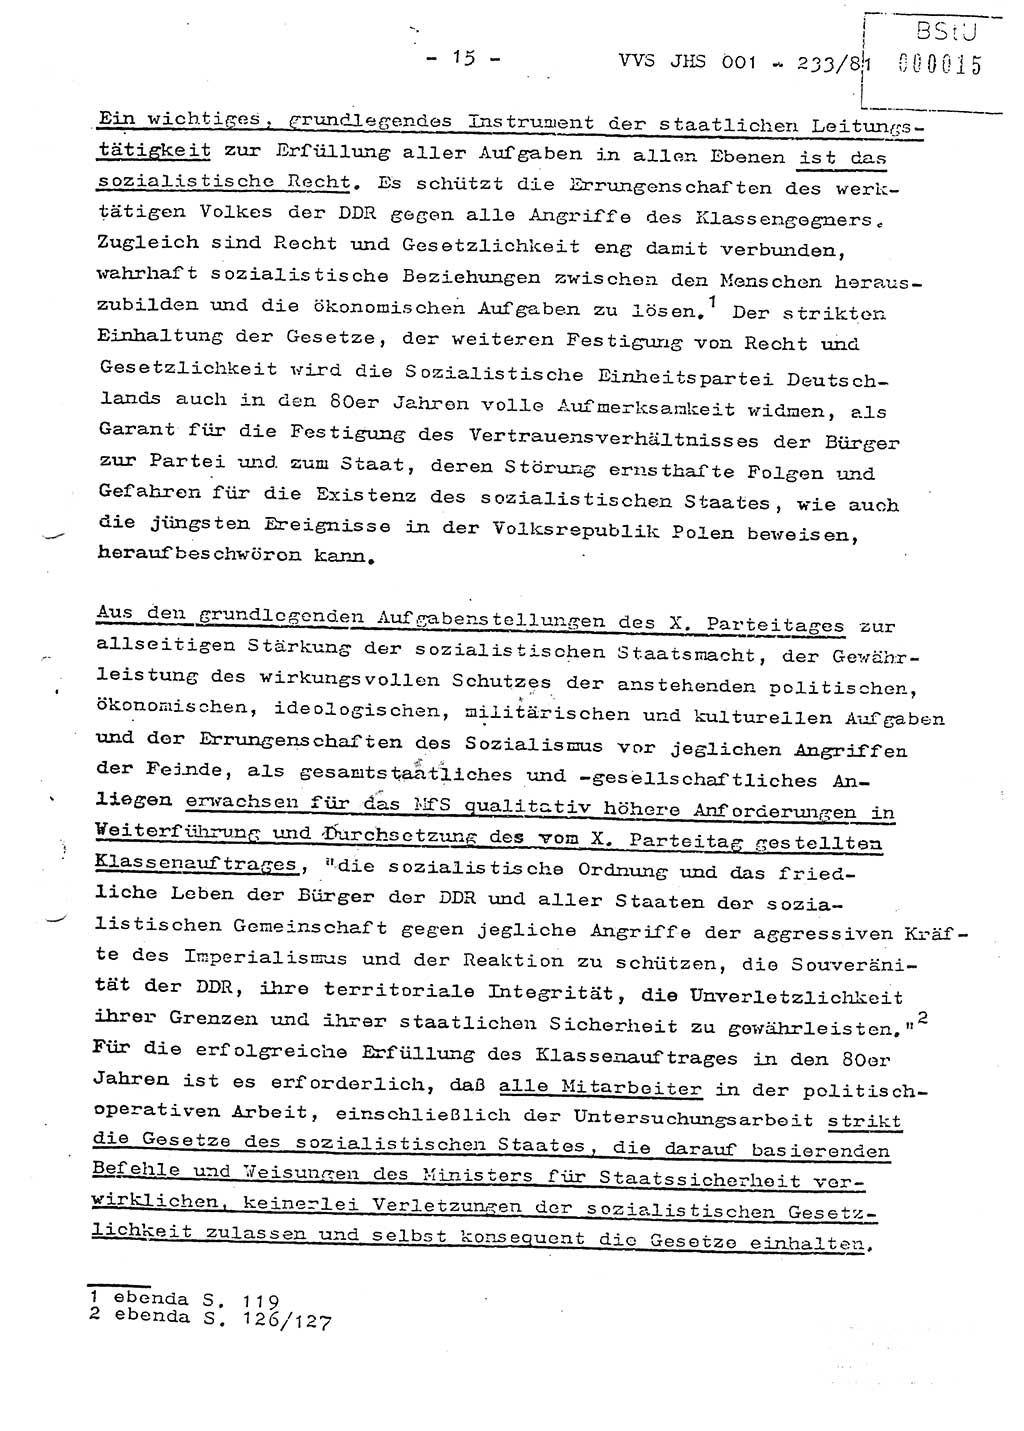 Dissertation Oberstleutnant Horst Zank (JHS), Oberstleutnant Dr. Karl-Heinz Knoblauch (JHS), Oberstleutnant Gustav-Adolf Kowalewski (HA Ⅸ), Oberstleutnant Wolfgang Plötner (HA Ⅸ), Ministerium für Staatssicherheit (MfS) [Deutsche Demokratische Republik (DDR)], Juristische Hochschule (JHS), Vertrauliche Verschlußsache (VVS) o001-233/81, Potsdam 1981, Blatt 15 (Diss. MfS DDR JHS VVS o001-233/81 1981, Bl. 15)